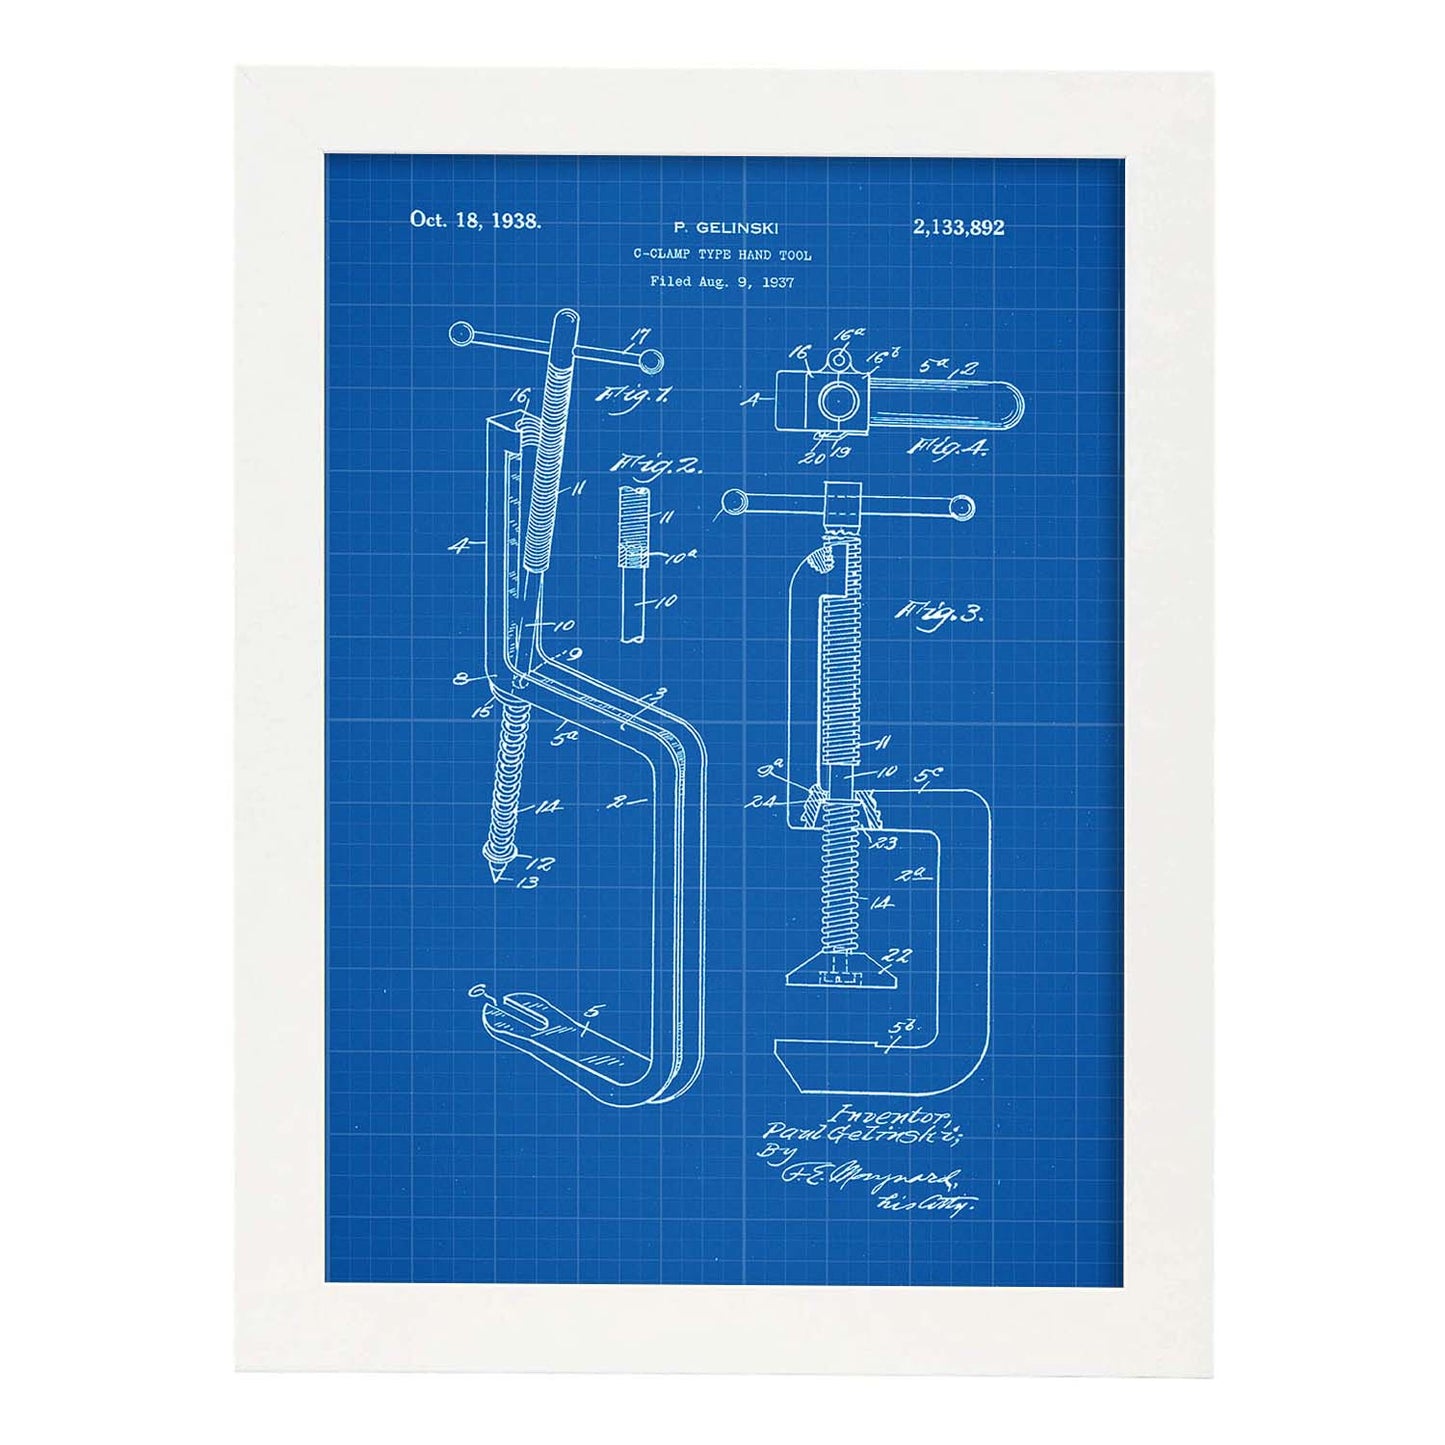 Poster con patente de Garra de mano. Lámina con diseño de patente antigua-Artwork-Nacnic-A3-Marco Blanco-Nacnic Estudio SL